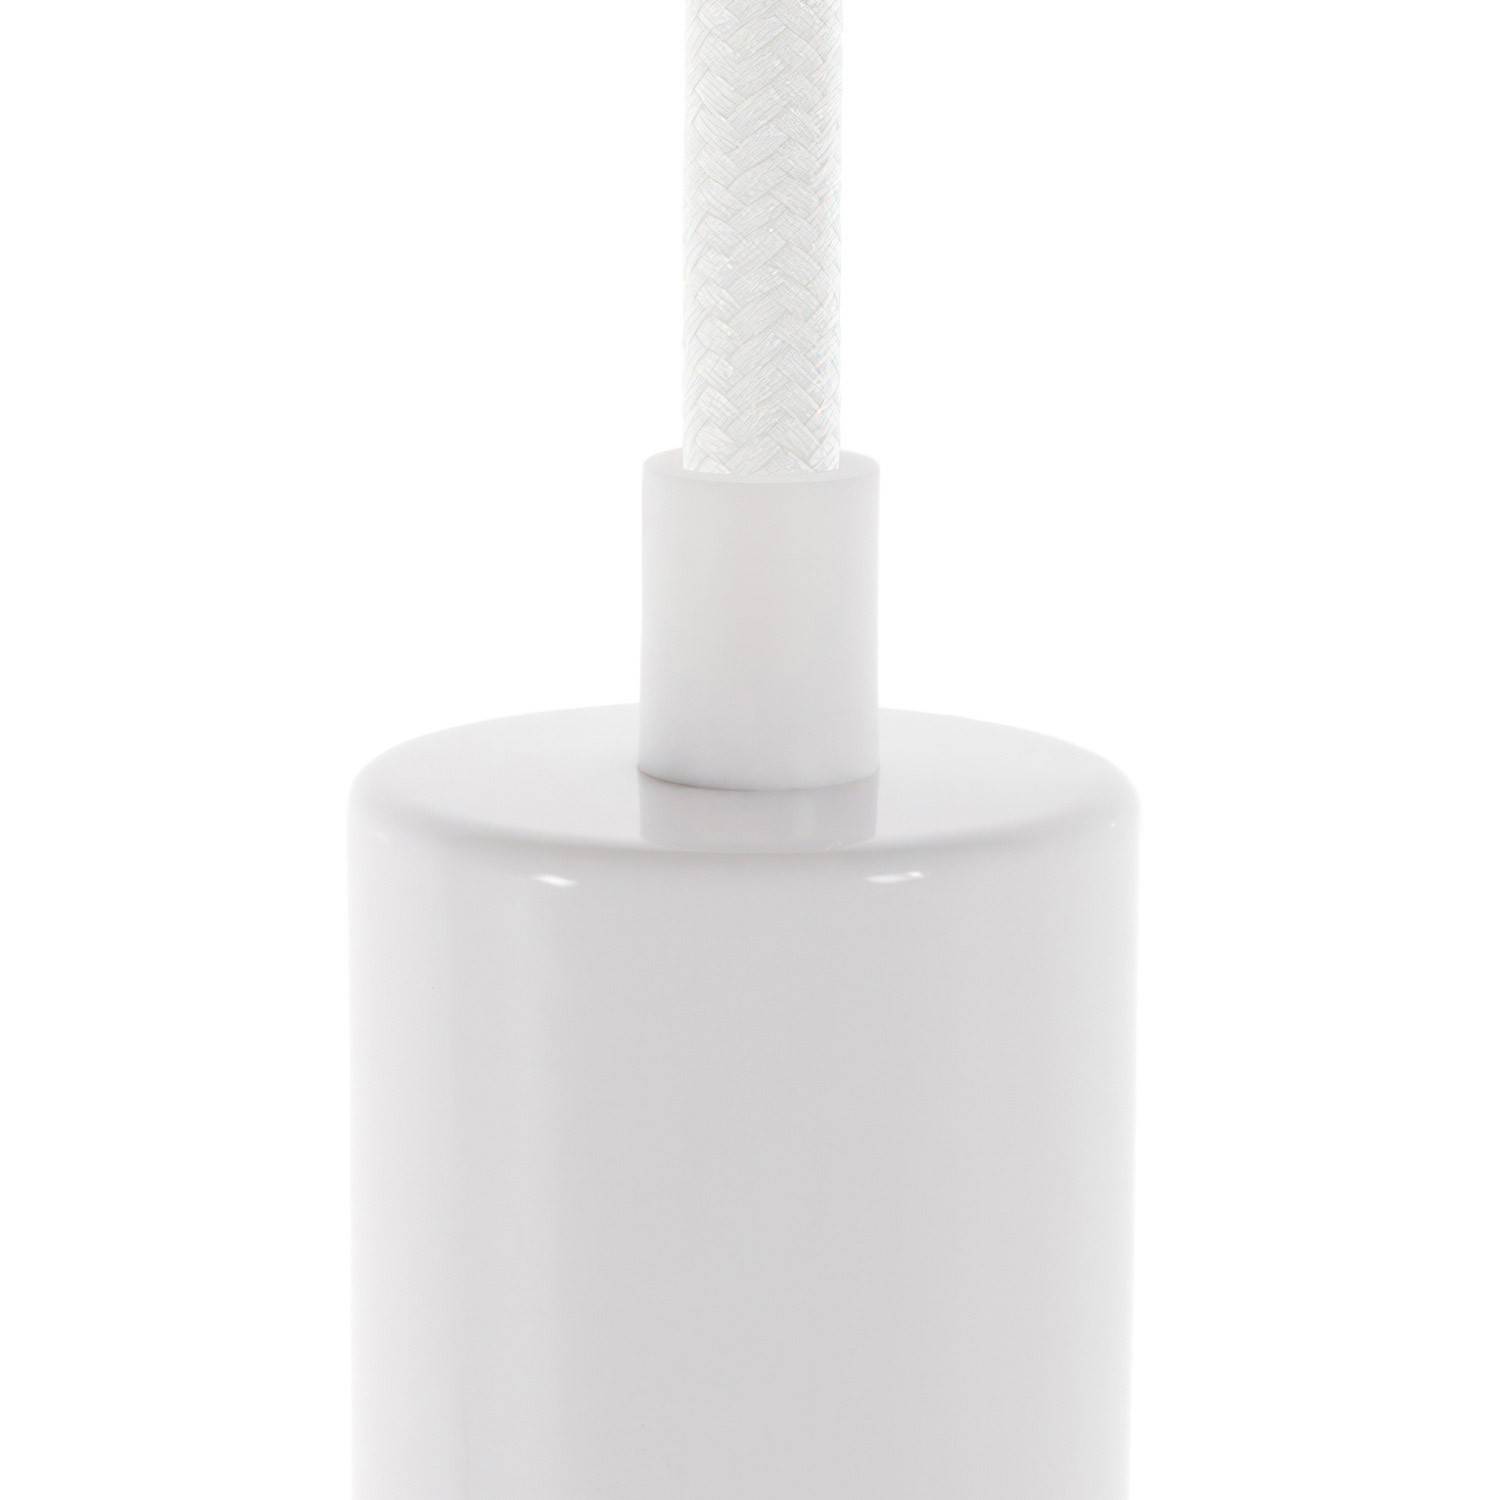 Clema de cablu din plastic cilindrică completă cu tijă, piuliță și șaibă.